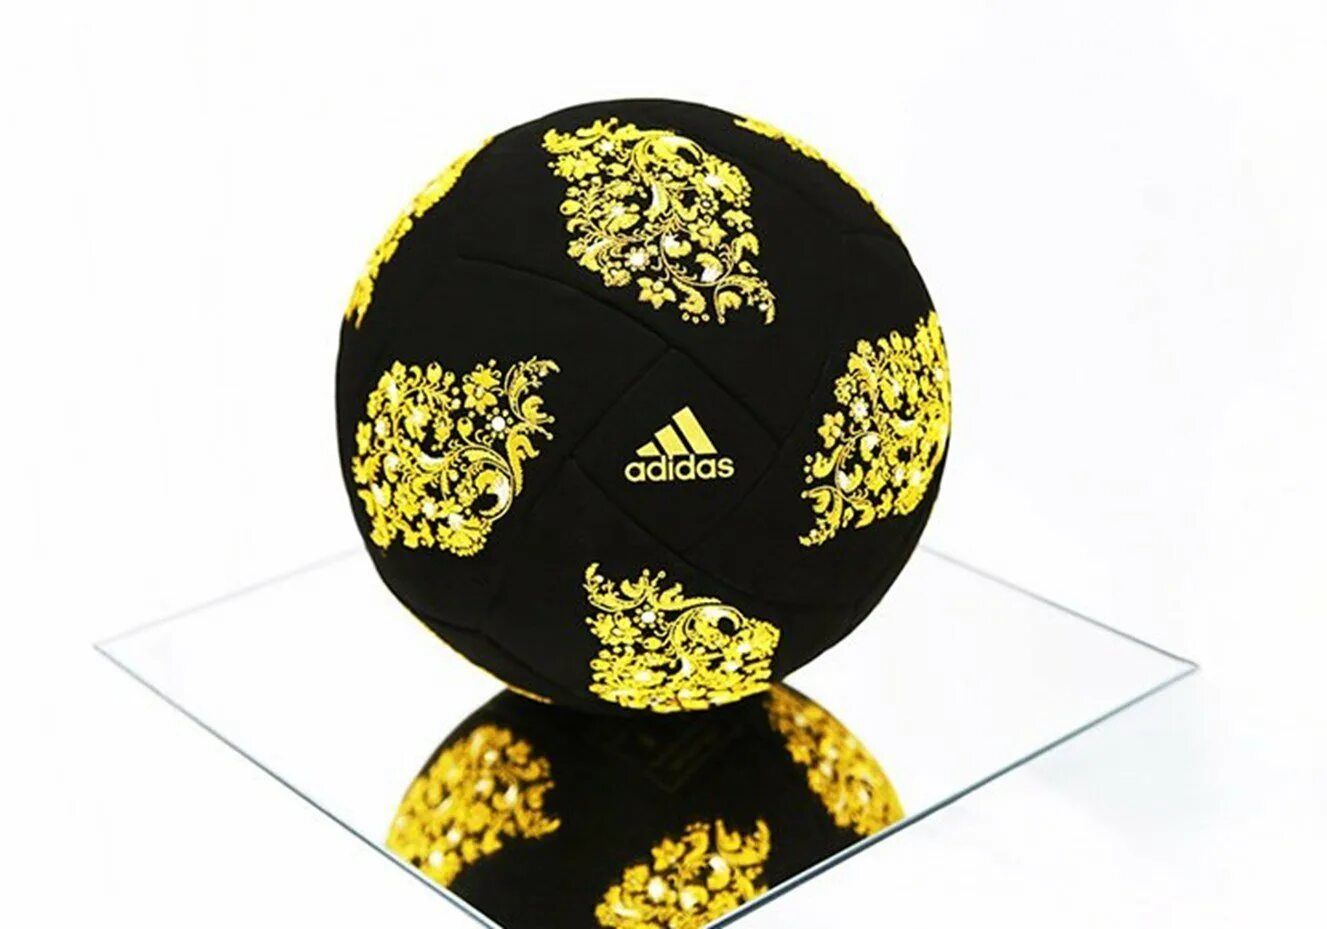 Самой дорогой мяч. Футбольный мяч адидас Делюкс Болл. Самый дорогой мяч адидас. Золотой мяч адидас. Необычный футбольный мяч.